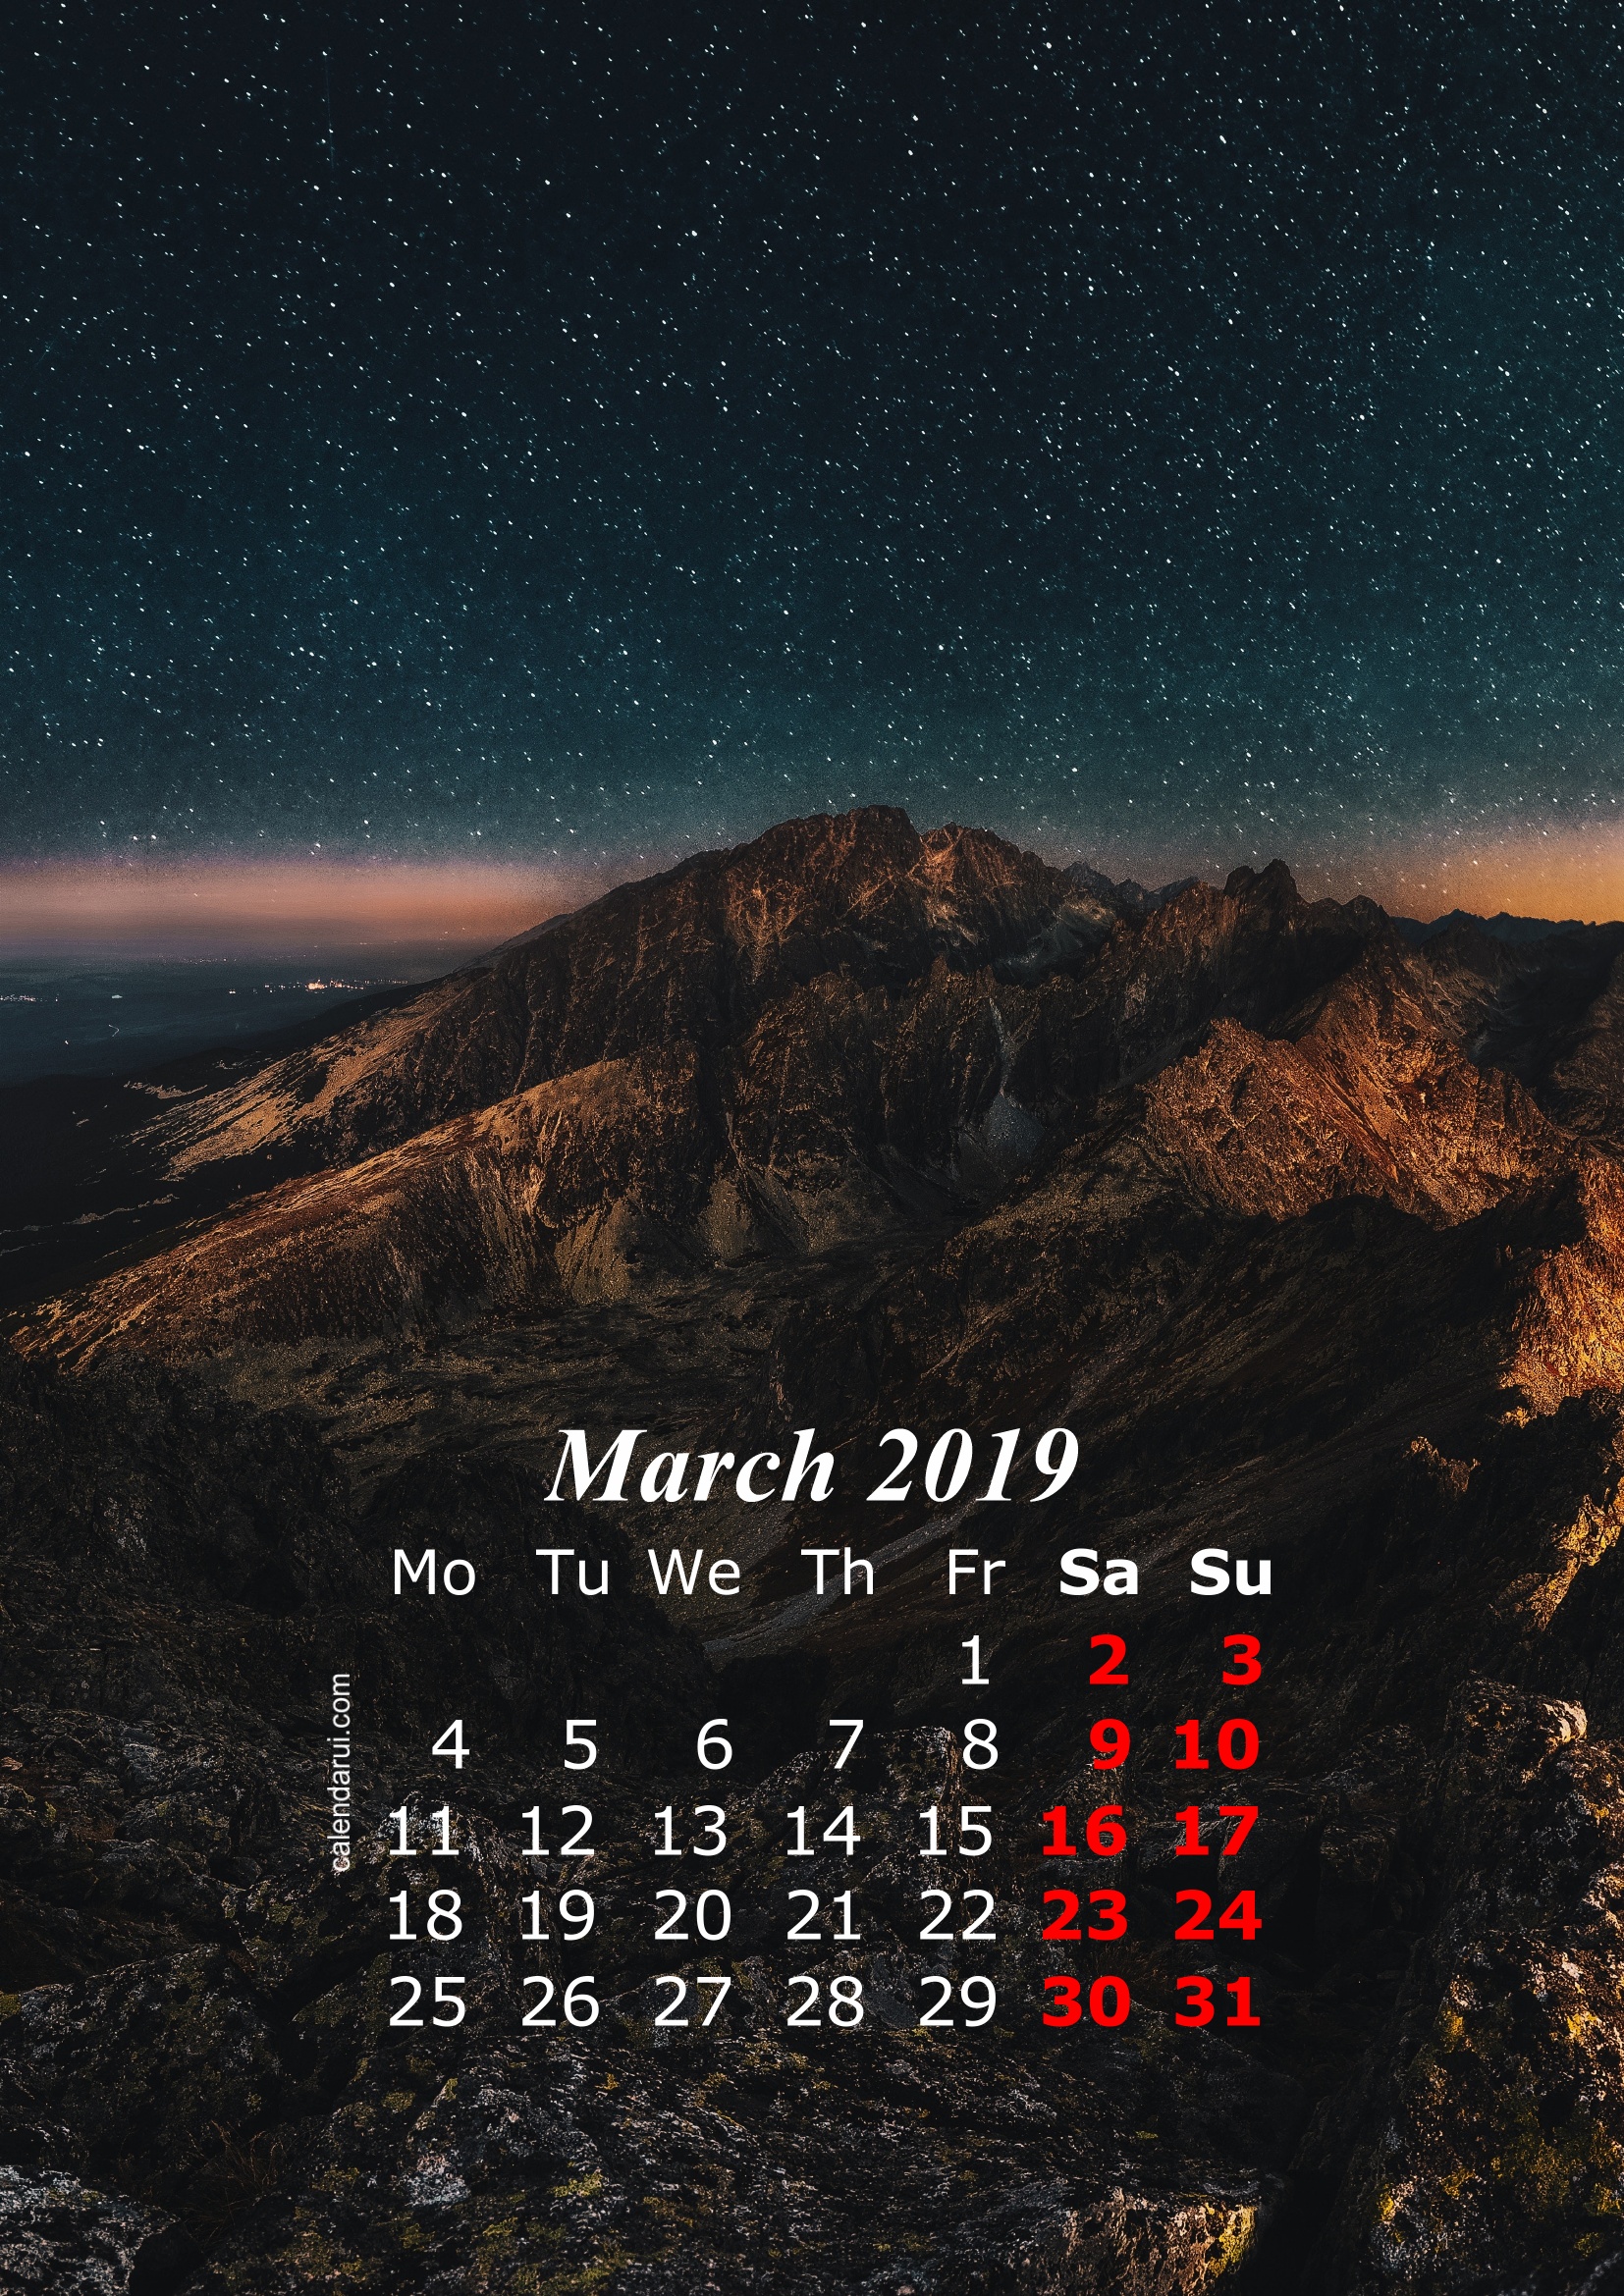 March 2019 iPhone Calendar Wallpaper